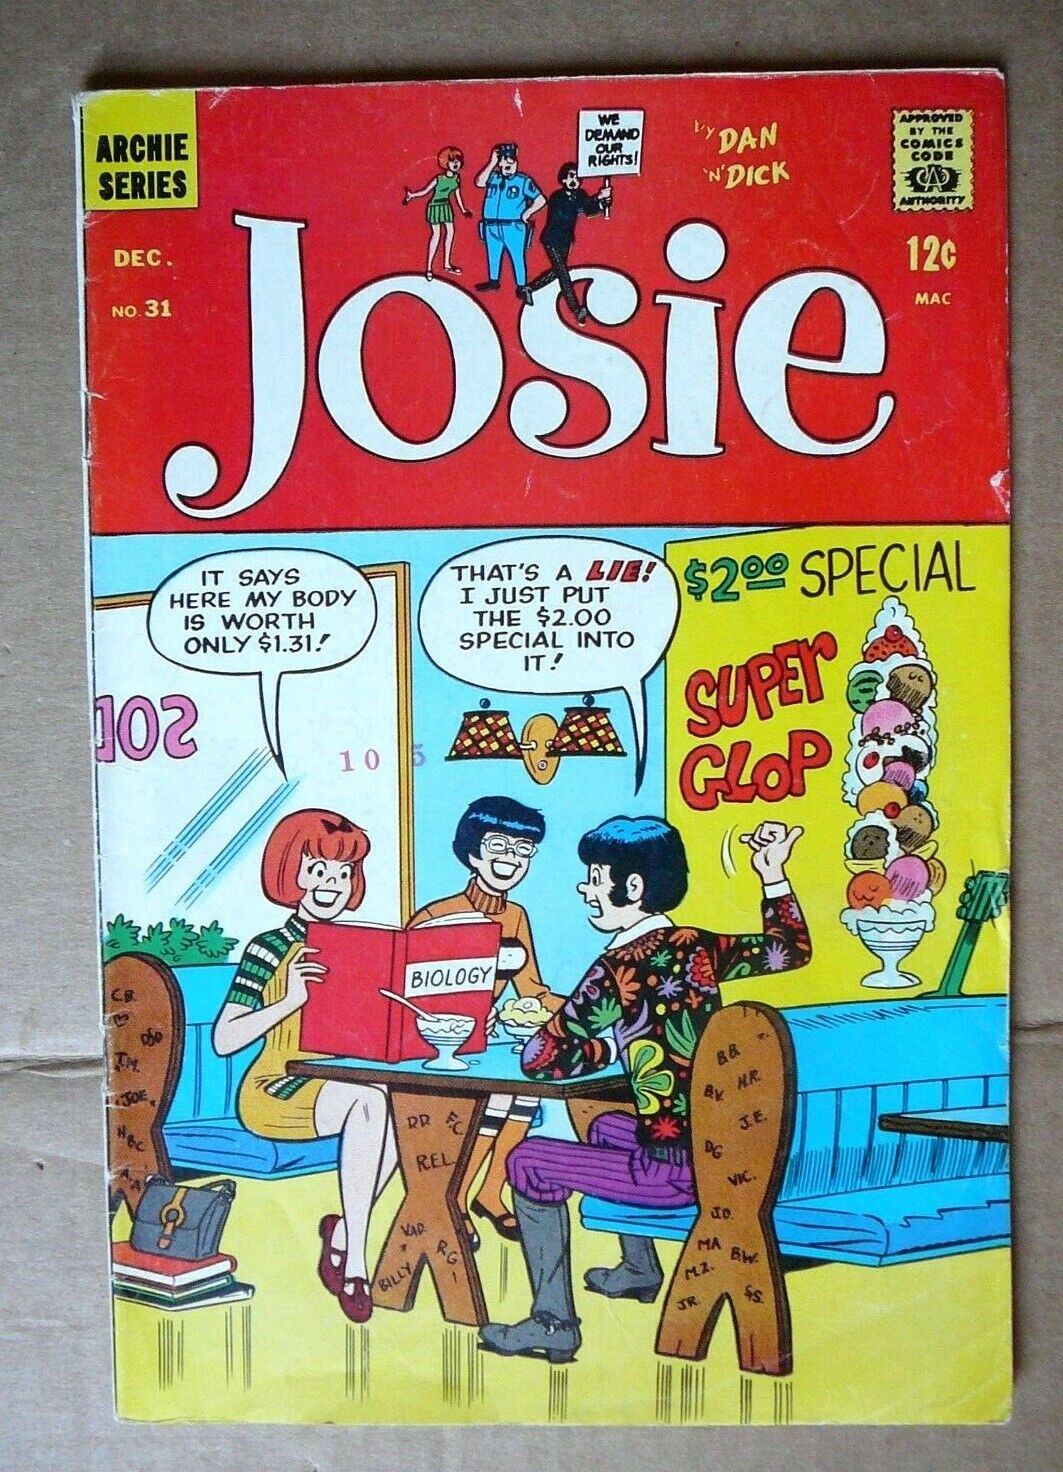 JOSIE - ISSUE No.31 - DECEMBER 1967 - ARCHIE SERIES by  RADIO COMICS - GOOD 